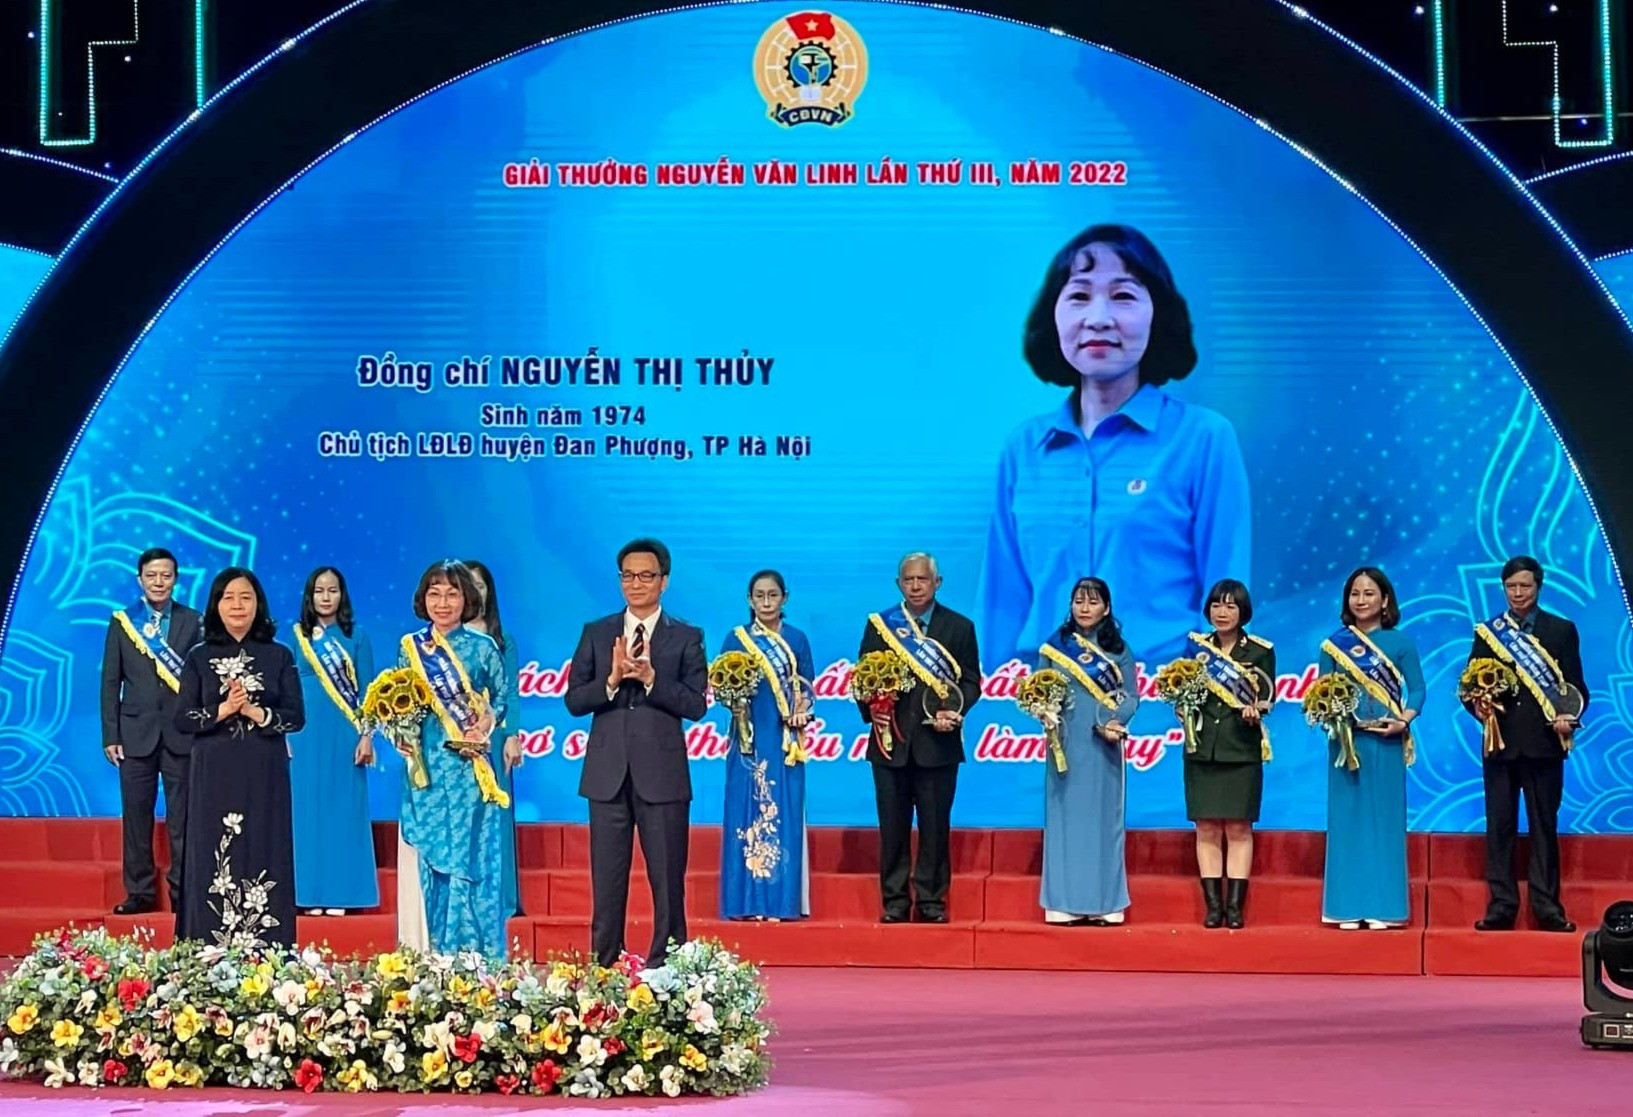 10 cán bộ công đoàn nhận Giải thưởng Nguyễn Văn Linh